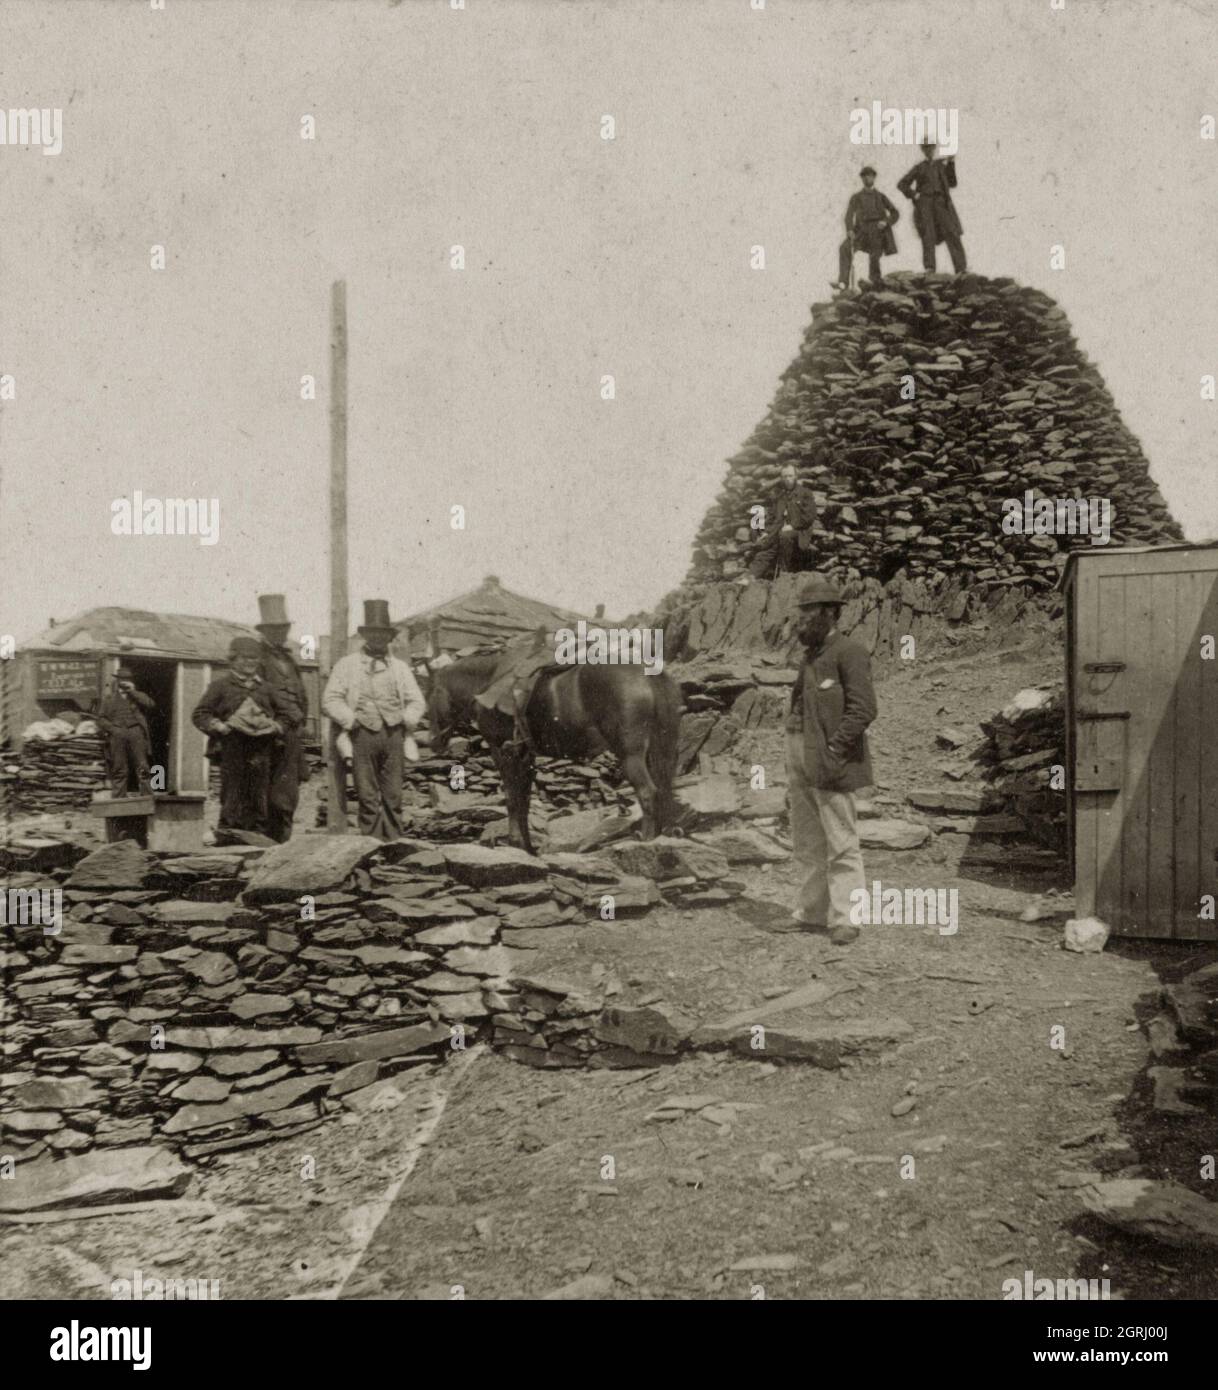 Vintage-Foto von etwa 1860 der Gipfelhotels auf Mount Snowdon oder Yr Wyddfa in Nord-Wales, Großbritannien. In der viktorianischen Zeit gab es eine Reihe von Hütten, die Erfrischungen dienten und Touristen, die den Berg besuchten, Schutz bieten. Stockfoto